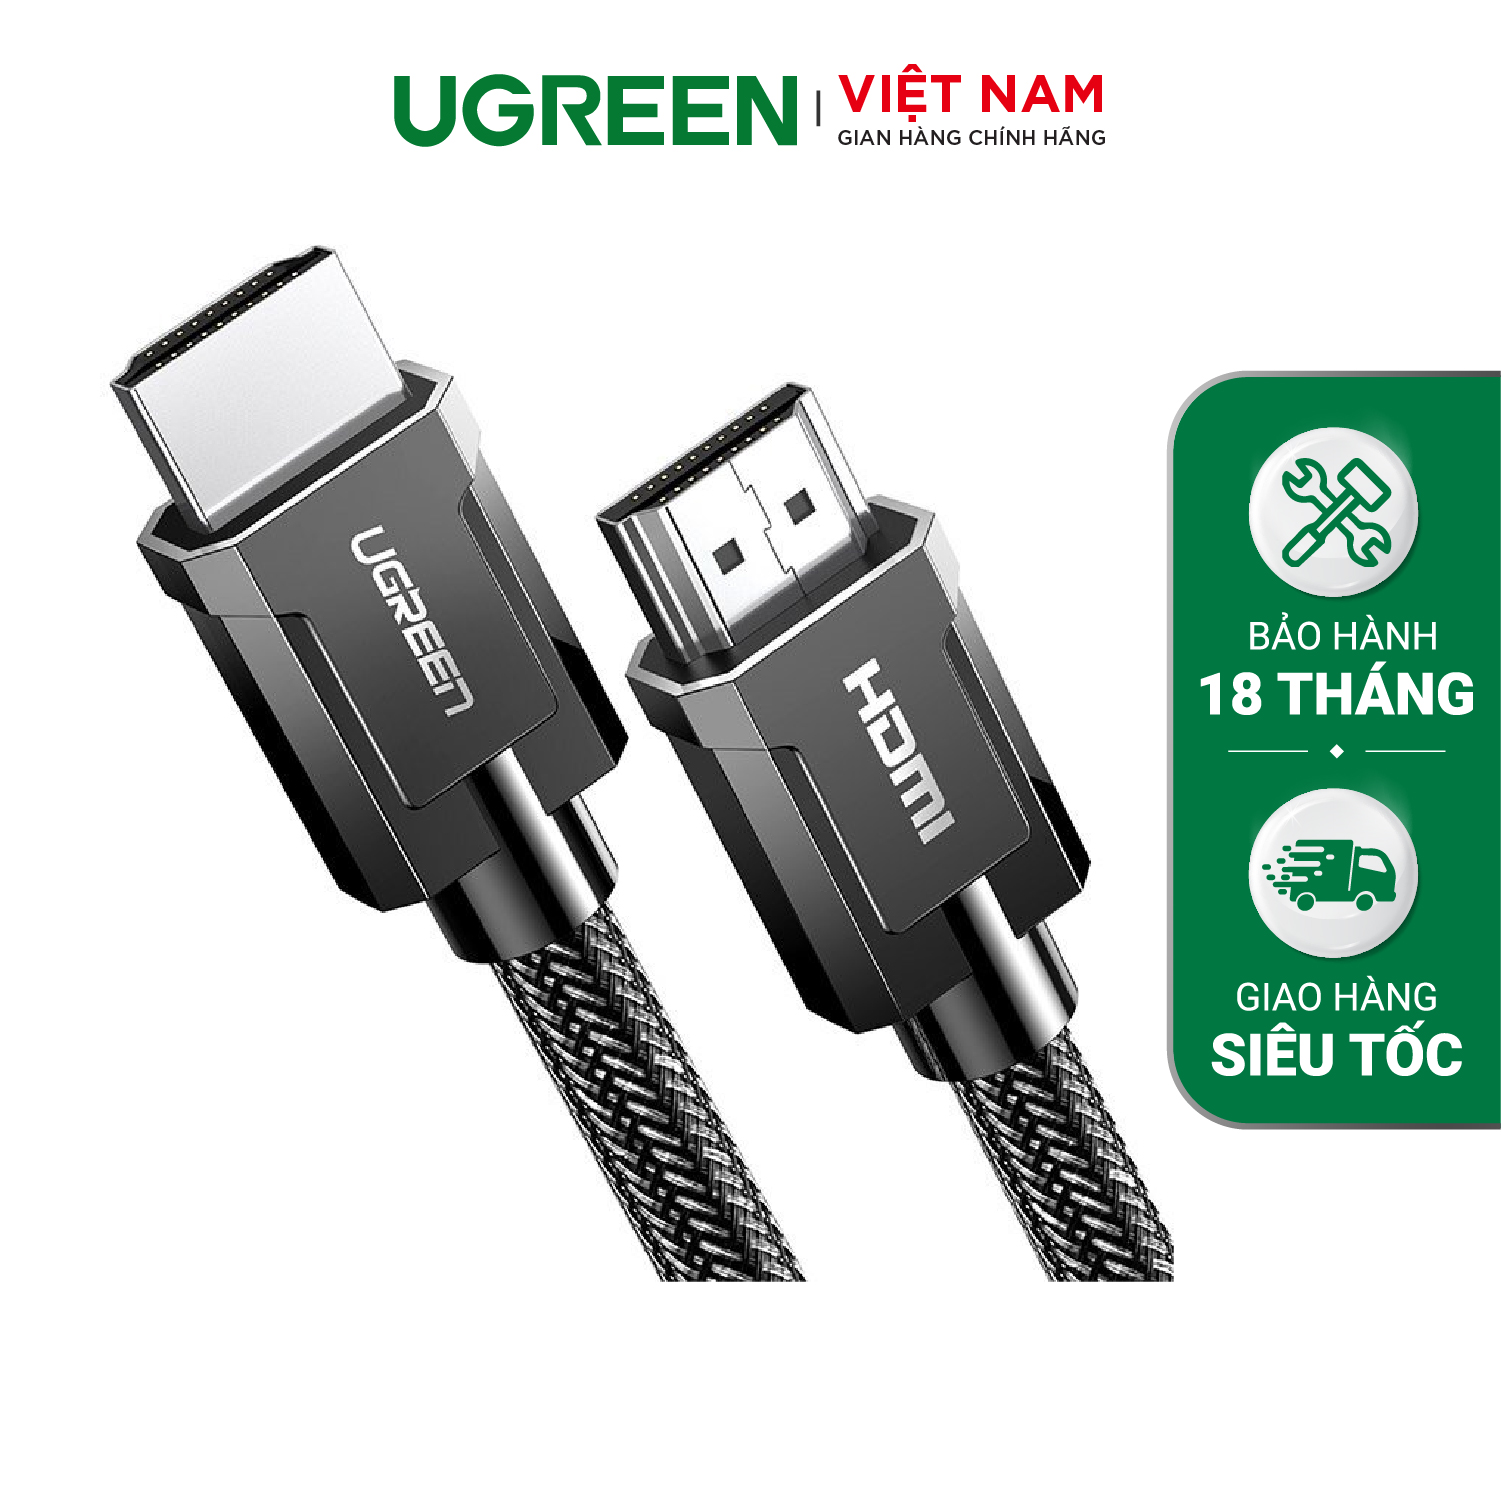 Cáp HDMI 2.0 UGREEN HD136 – Hỗ trợ phân giải 4K@60Hz, âm thanh HD Dolby Digital 7.1- Đầu tiếp xúc mạ Niken, lõi đồng nguyên chất – Hàng phân phối chính hãng – Bảo hành 18 tháng 1 đổi 1